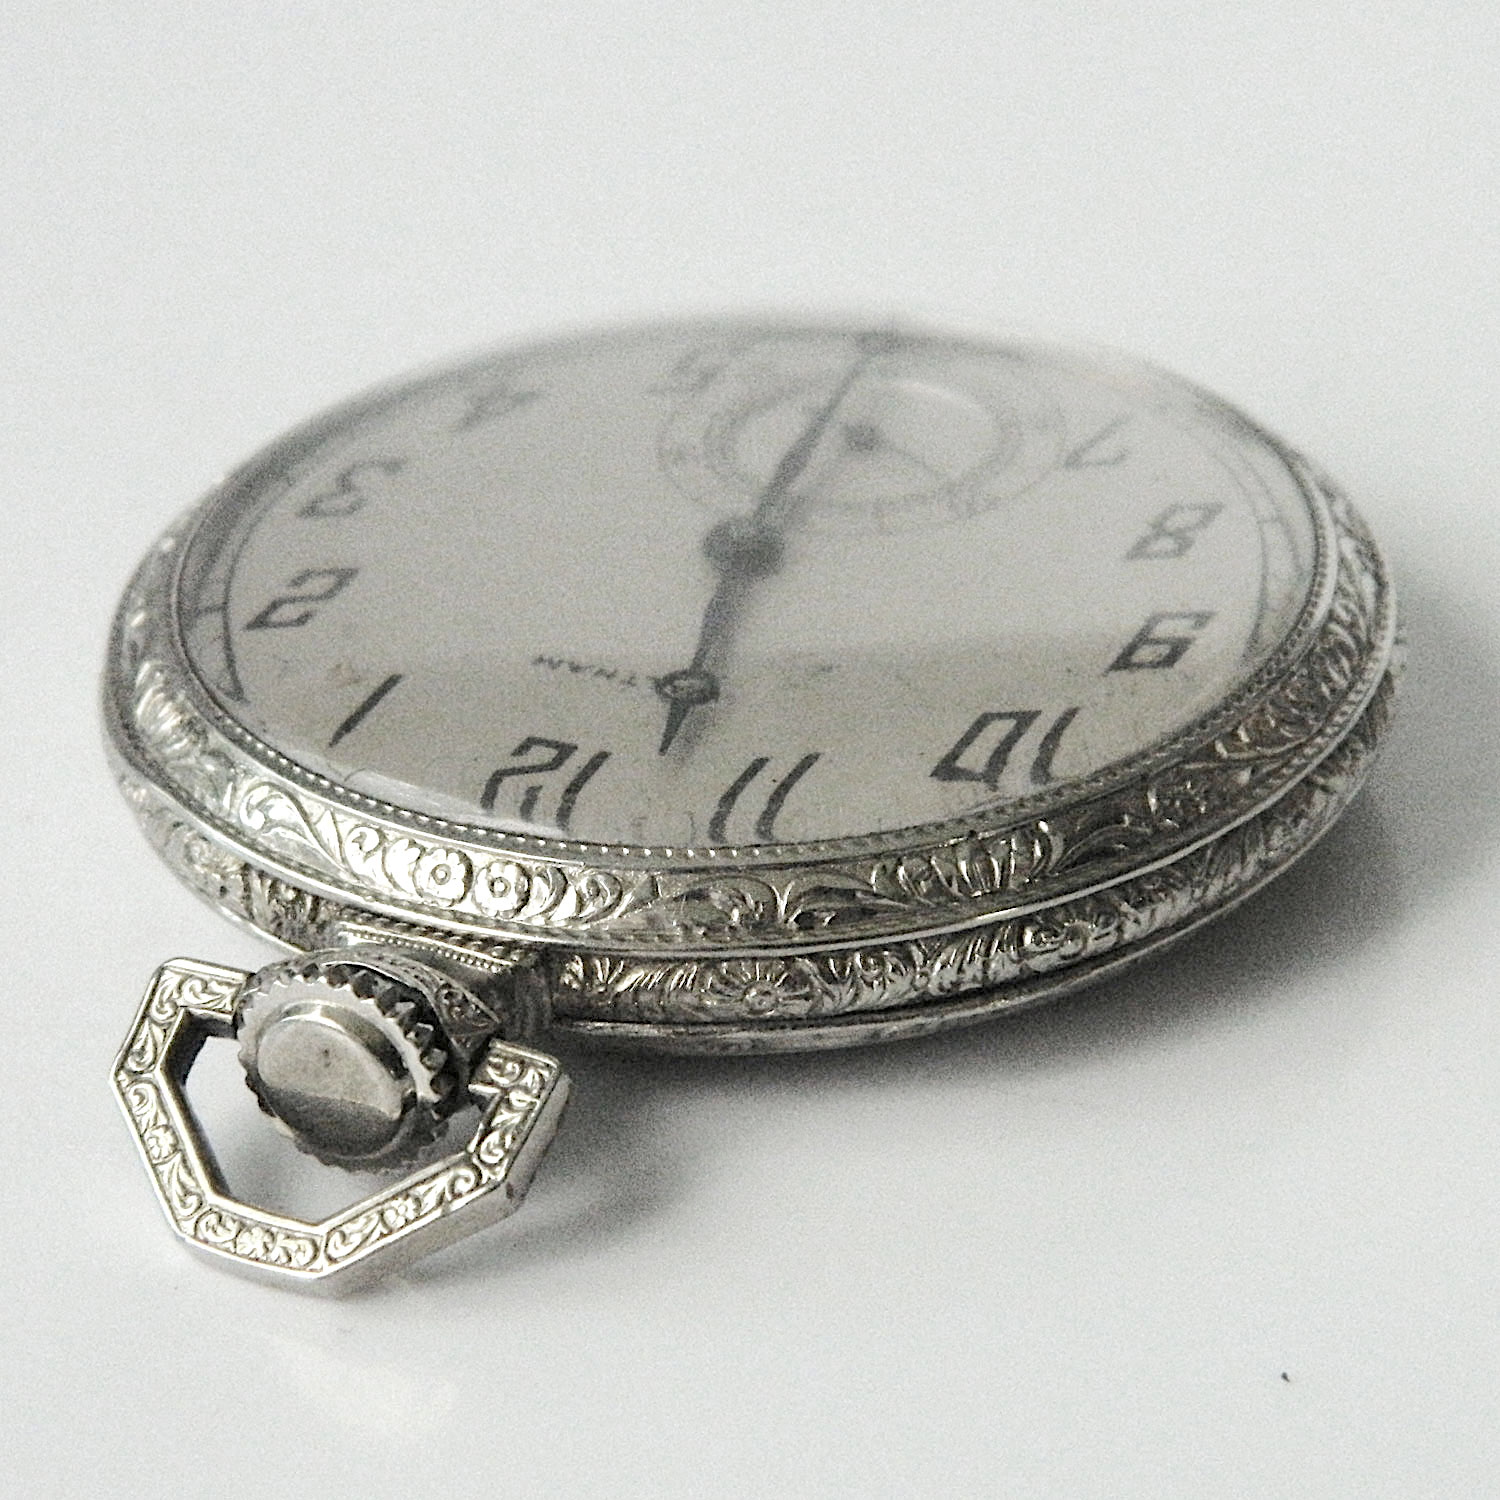 Antique Waltham pocket watch